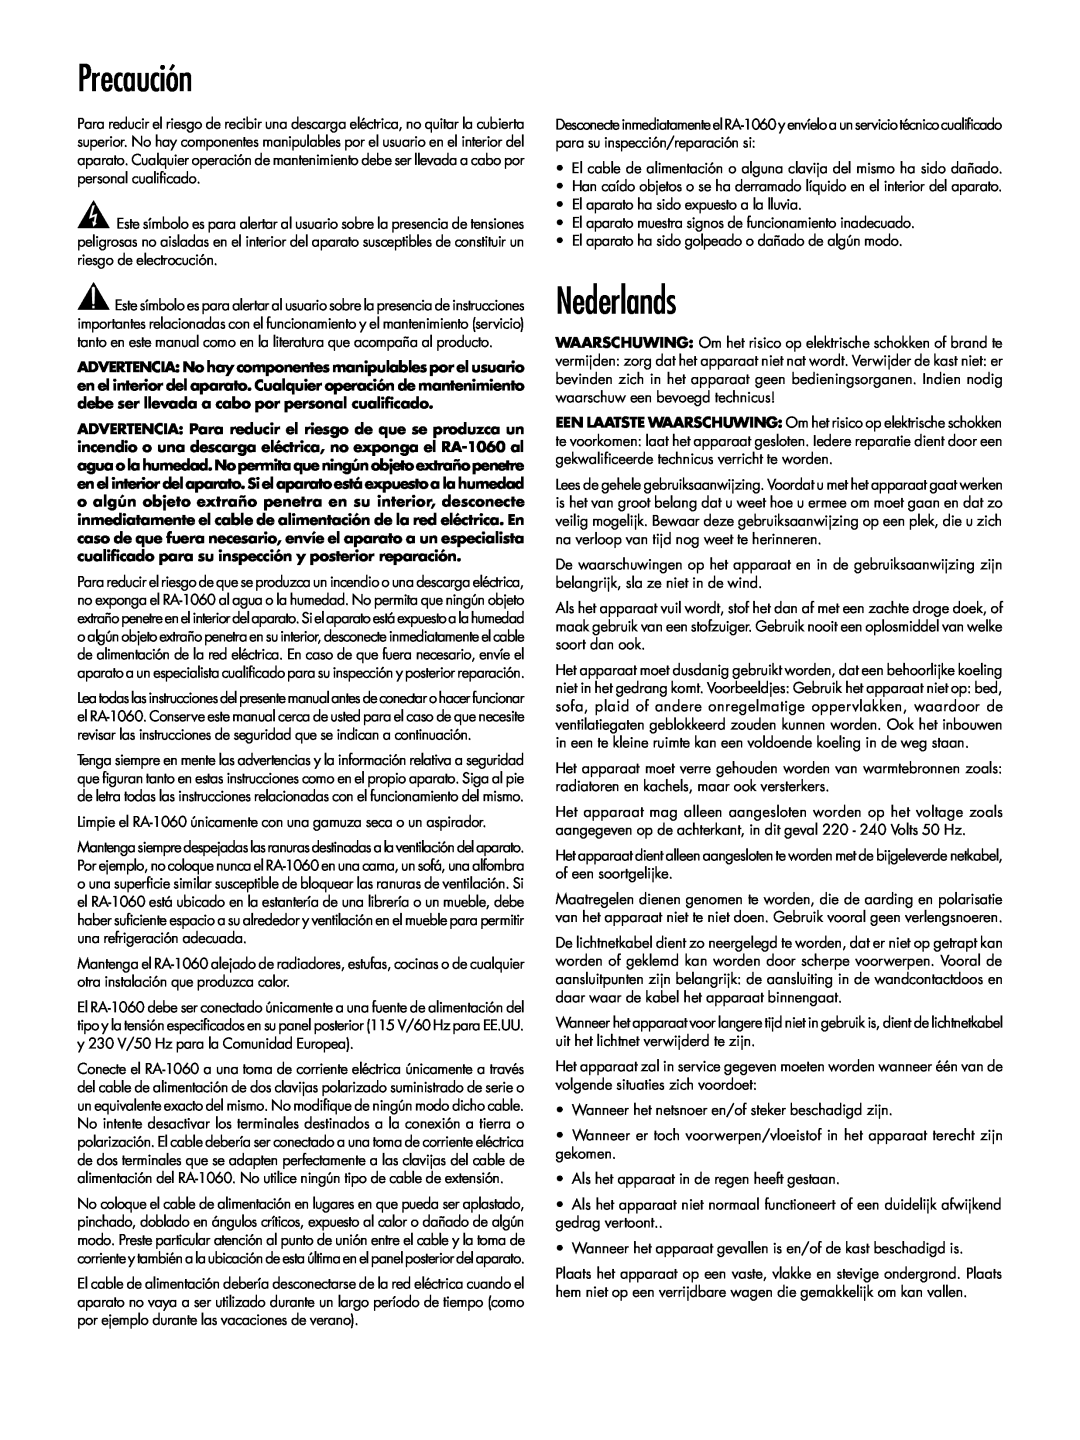 Rotel RA-1060 owner manual Precaución, Nederlands 